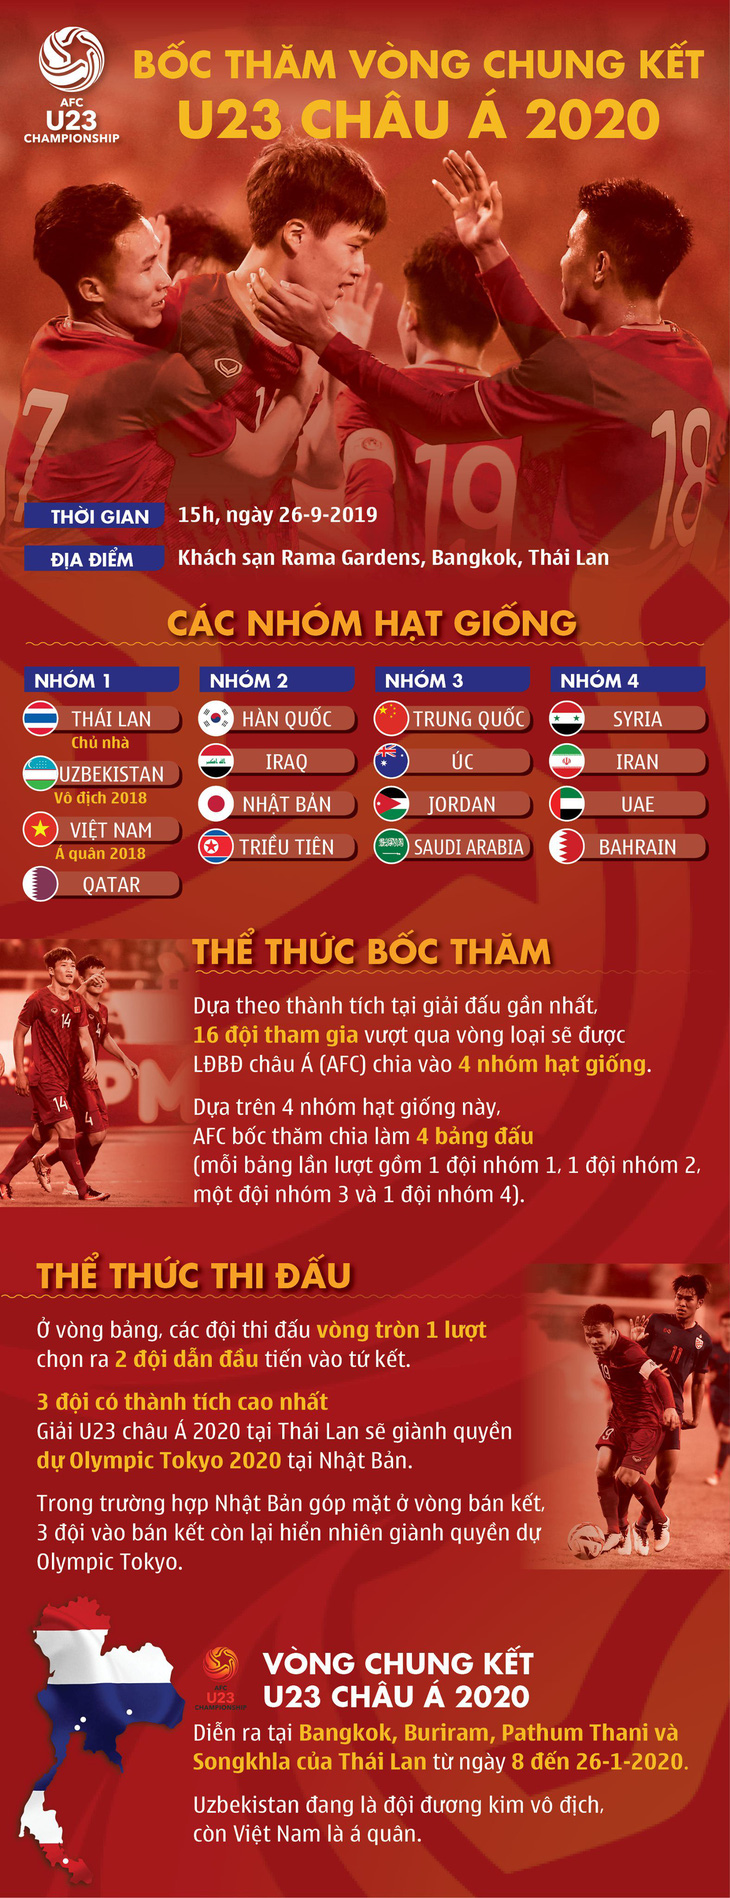 Bốc thăm U23 châu Á 2020: U23 Việt Nam rơi vào bảng đấu ông lớn? - Ảnh 2.